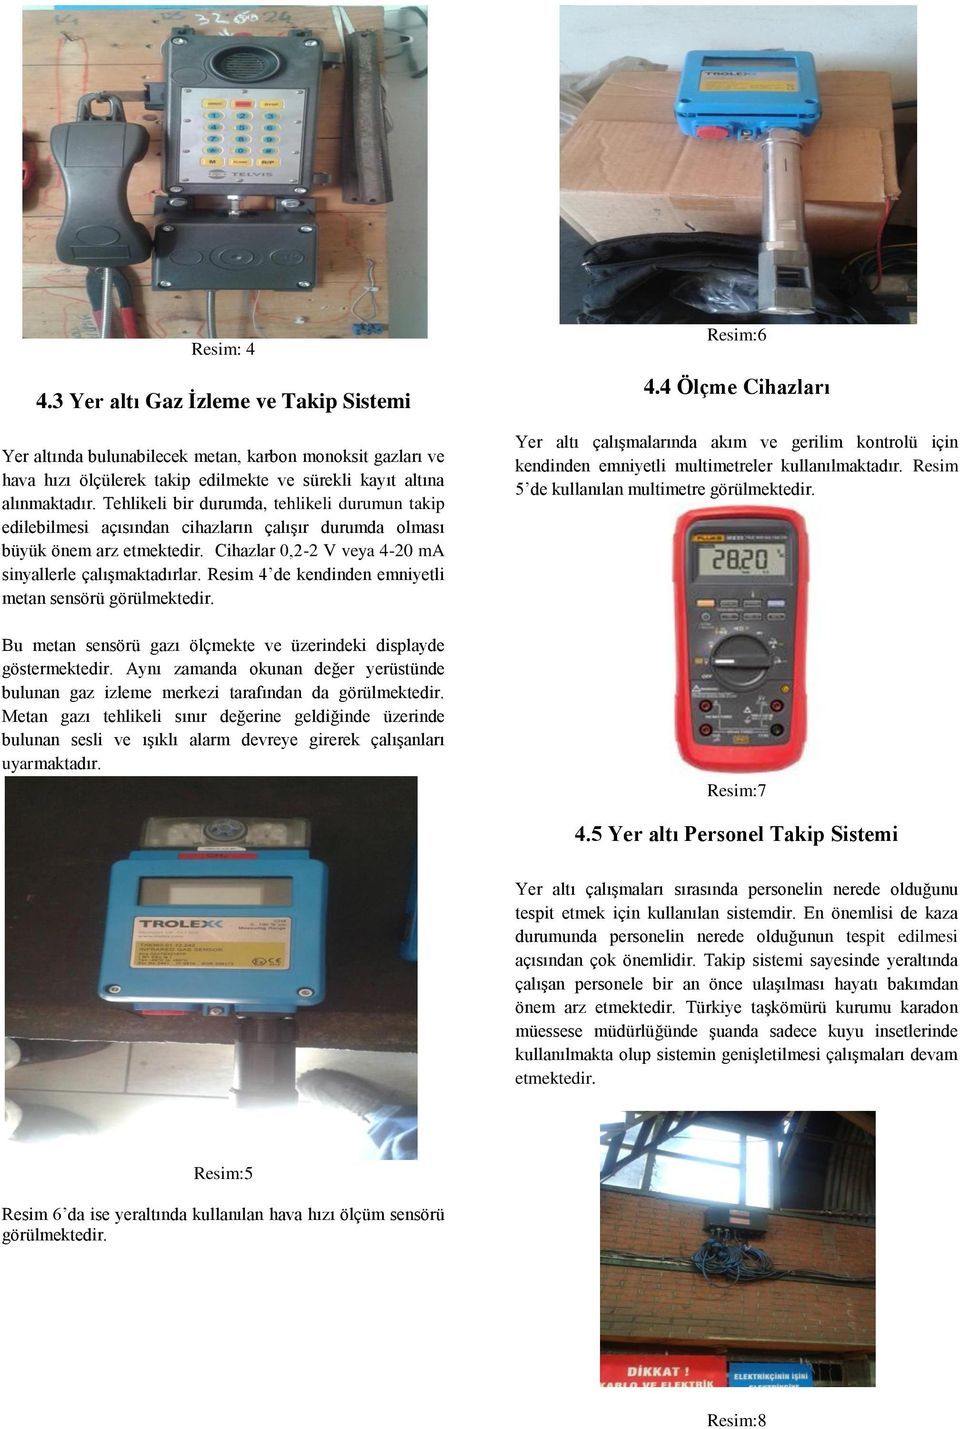 Resim 4 de kendinden emniyetli metan sensörü Bu metan sensörü gazı ölçmekte ve üzerindeki displayde göstermektedir.